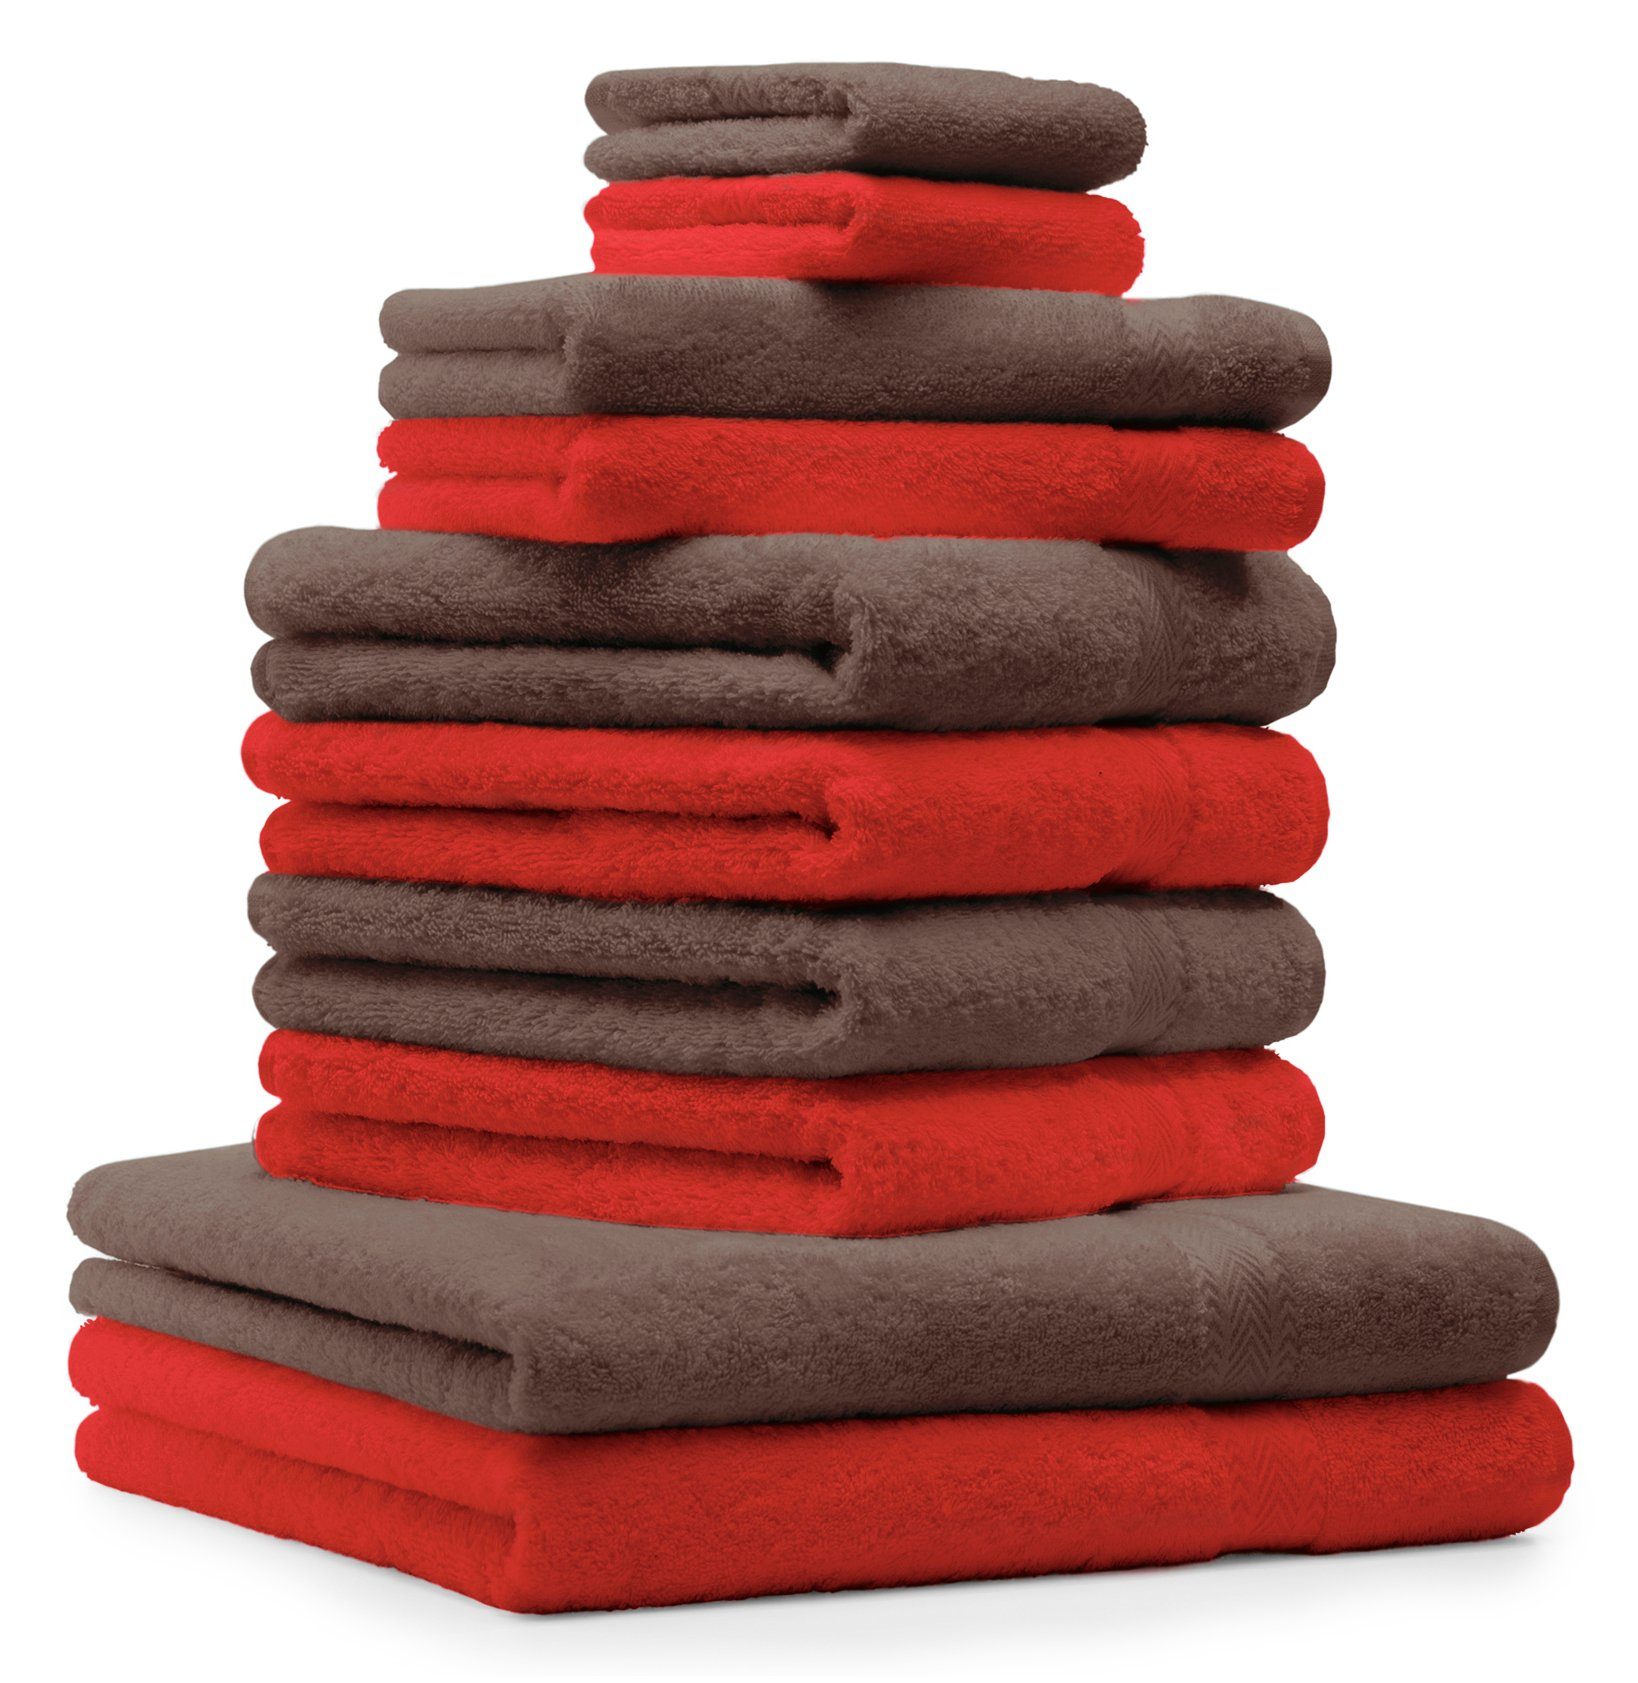 Betz Handtuch Set 10-TLG. Handtuch-Set CLASSIC 100% Baumwolle Farbe rot und nussbraun, 100% Baumwolle | Handtuch-Sets